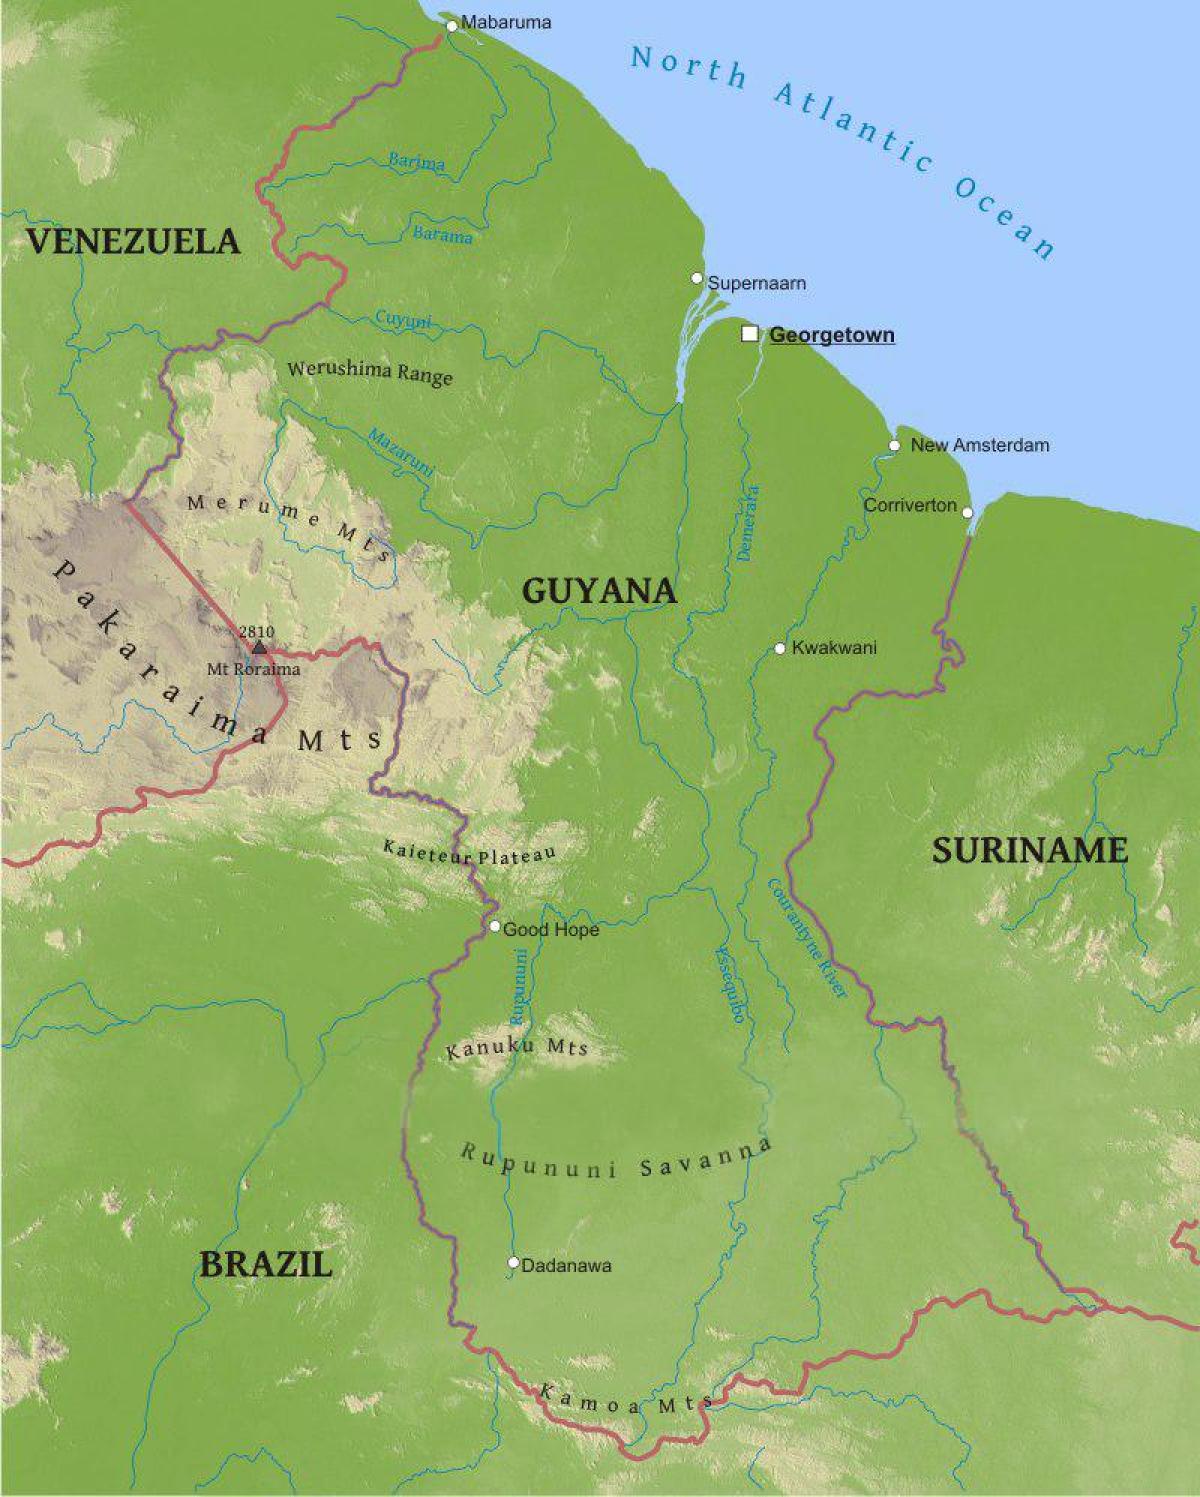 Karte von Guyana zeigen die niedrigen Küstenebene